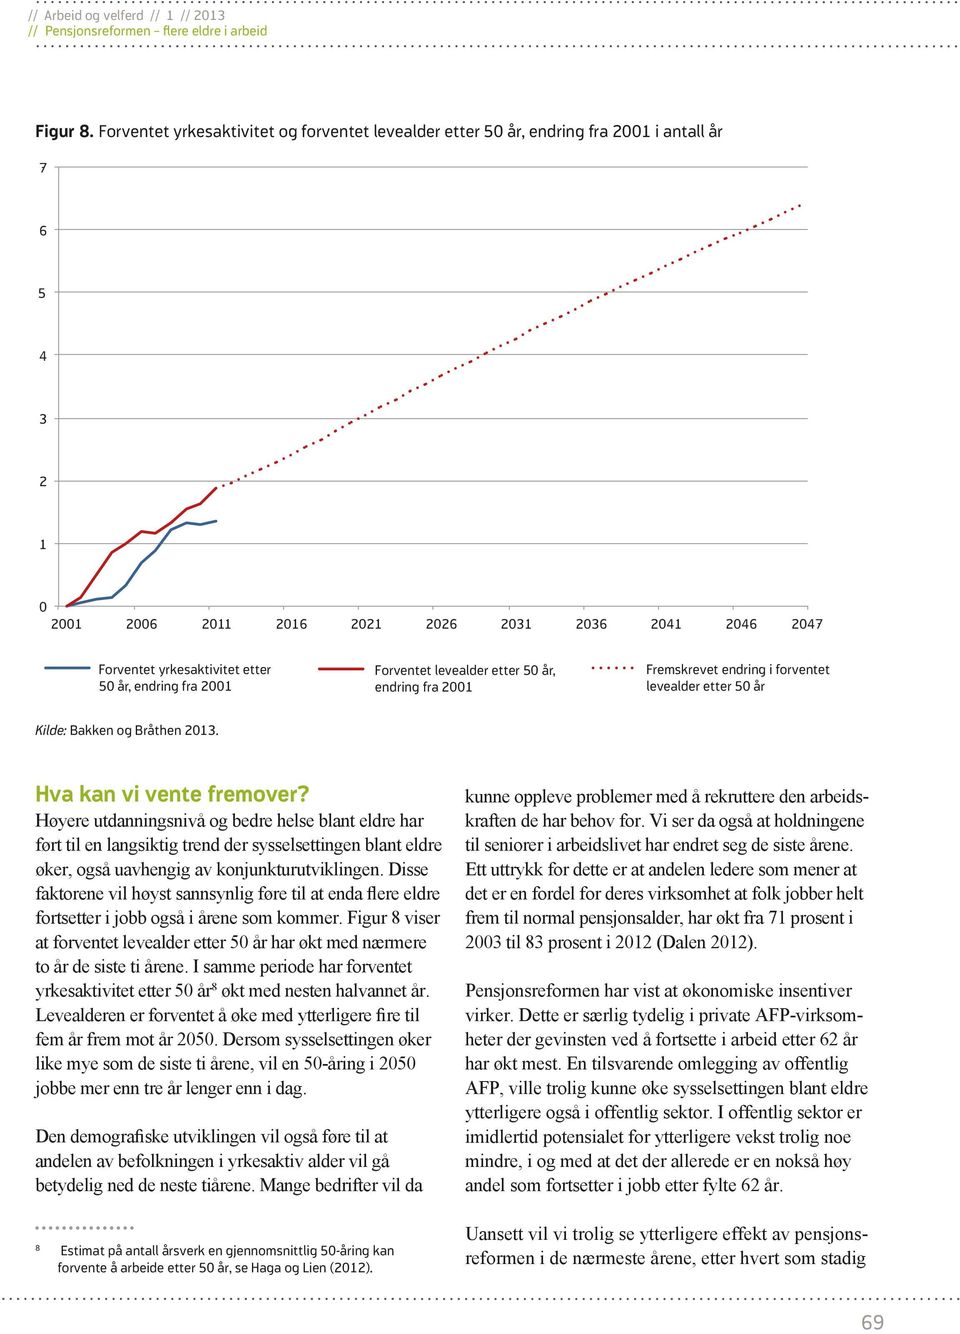 endring fra 2001 Forventet levealder etter 50 år, endring fra 2001 Fremskrevet endring i forventet levealder etter 50 år Kilde: Bakken og Bråthen 2013. Hva kan vi vente fremover?